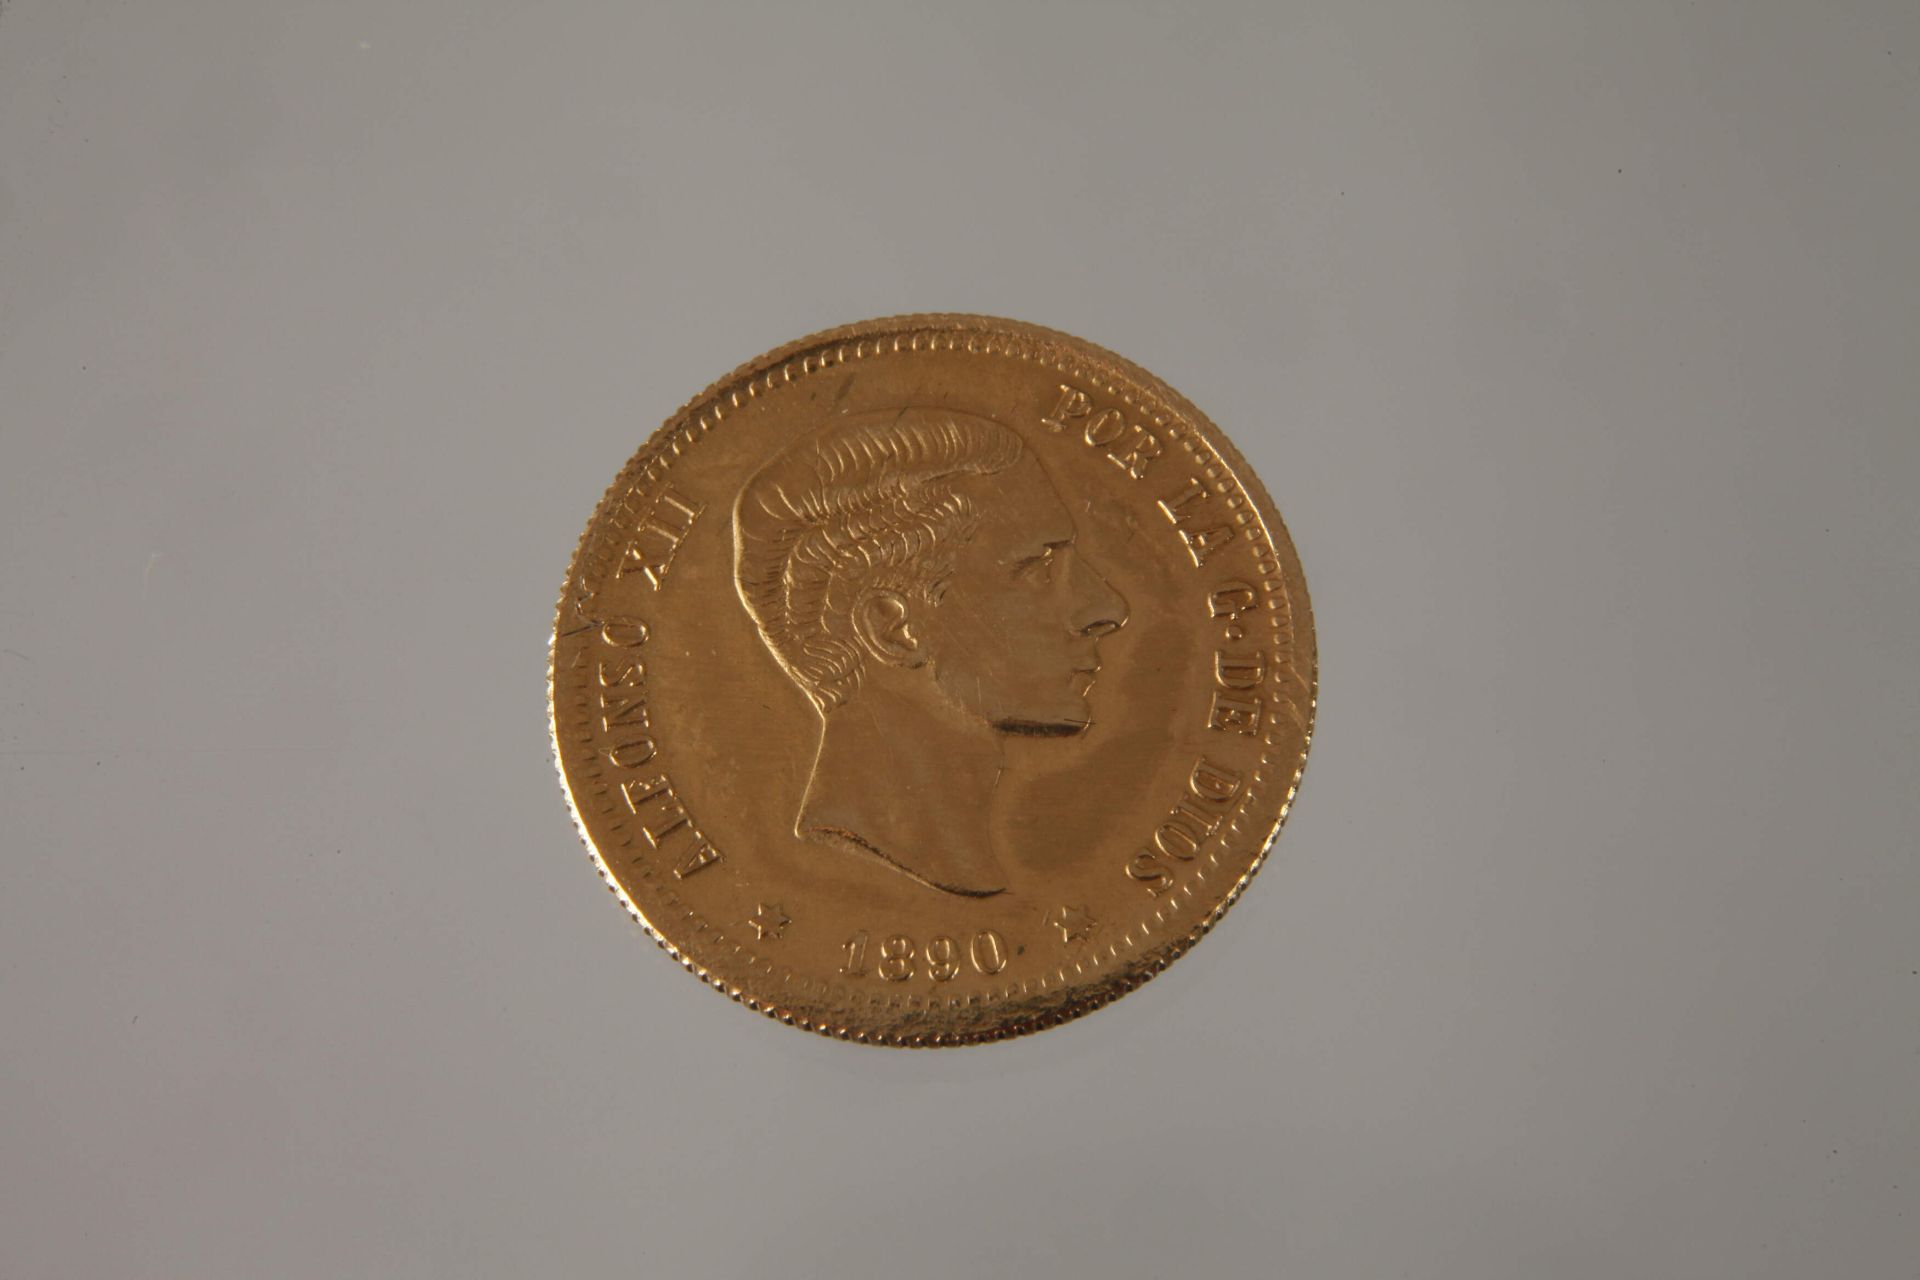 10 pesetas gold - Image 2 of 3